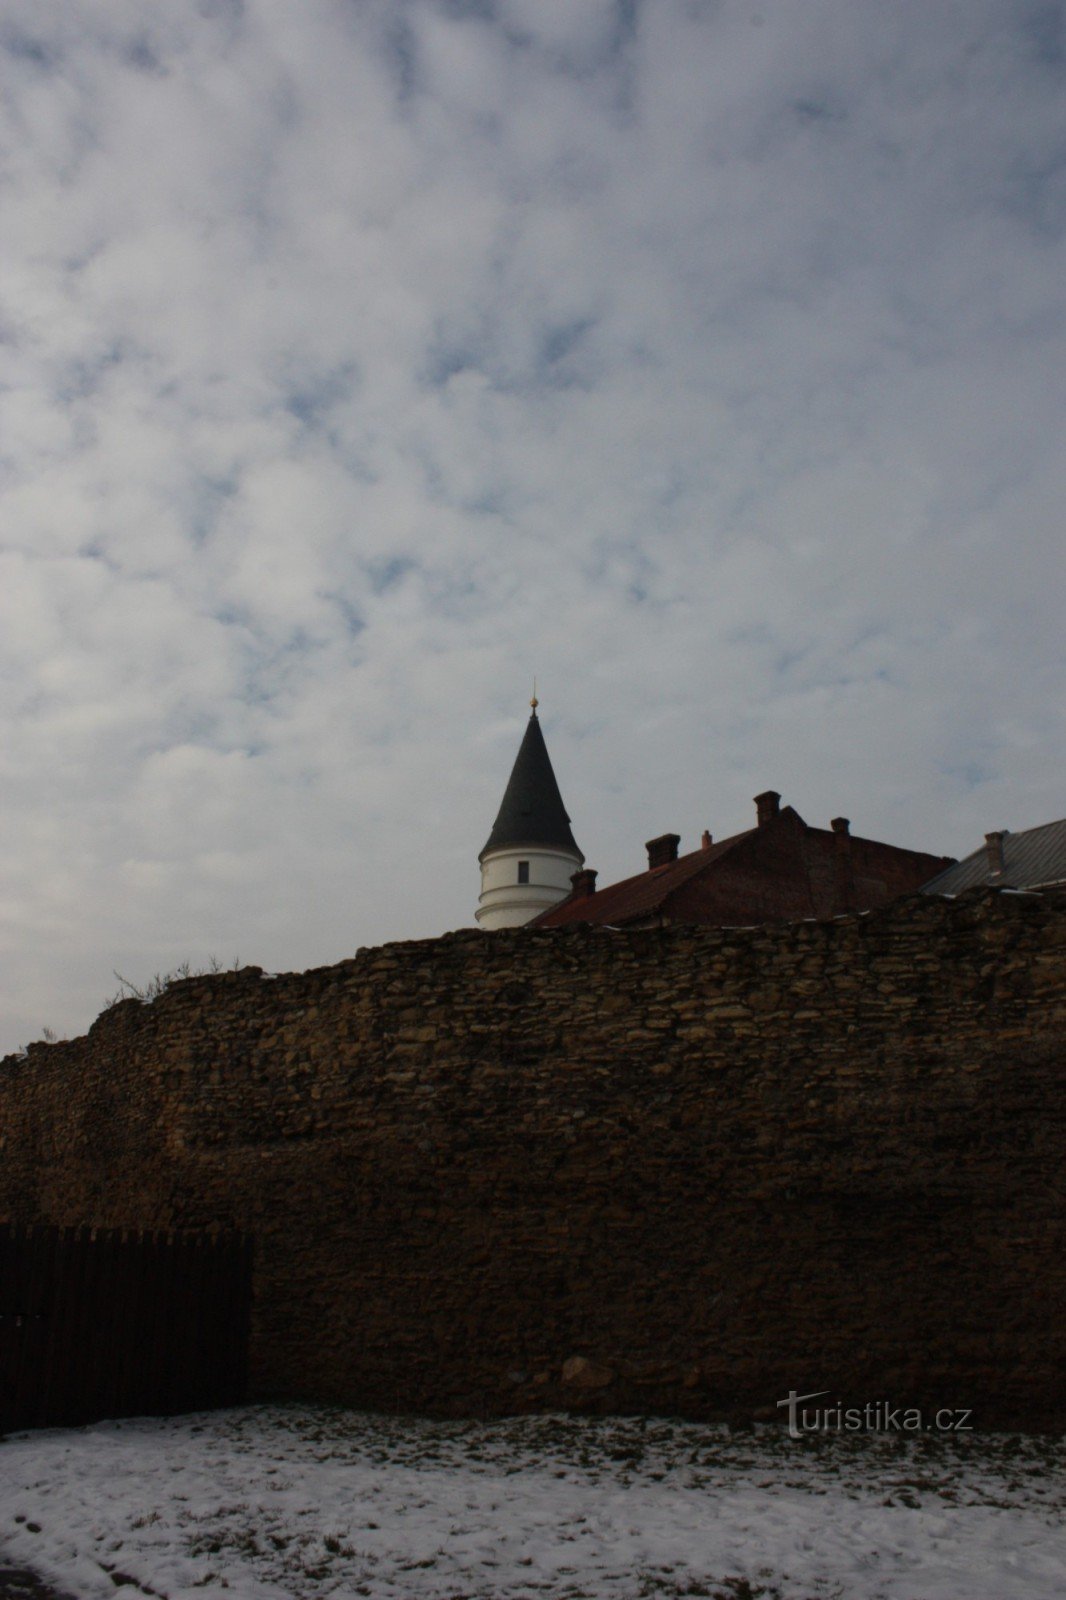 Rămășițe ale sistemului de fortificații din secolul al XV-lea în Přerov